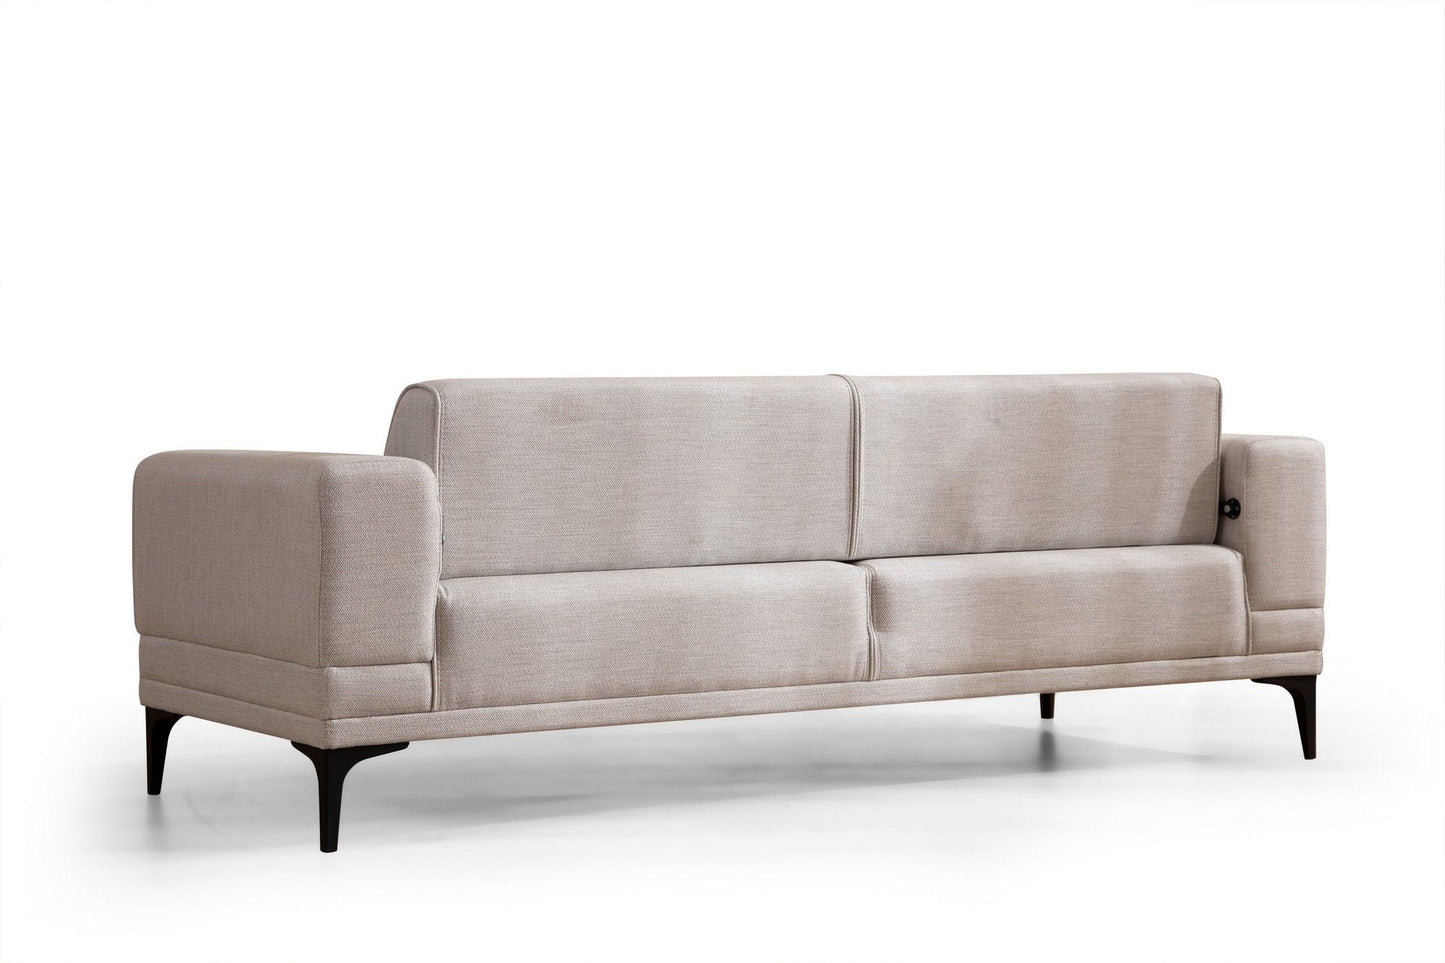 Horizon - Ecru - 3-Seat Sofa-Bed